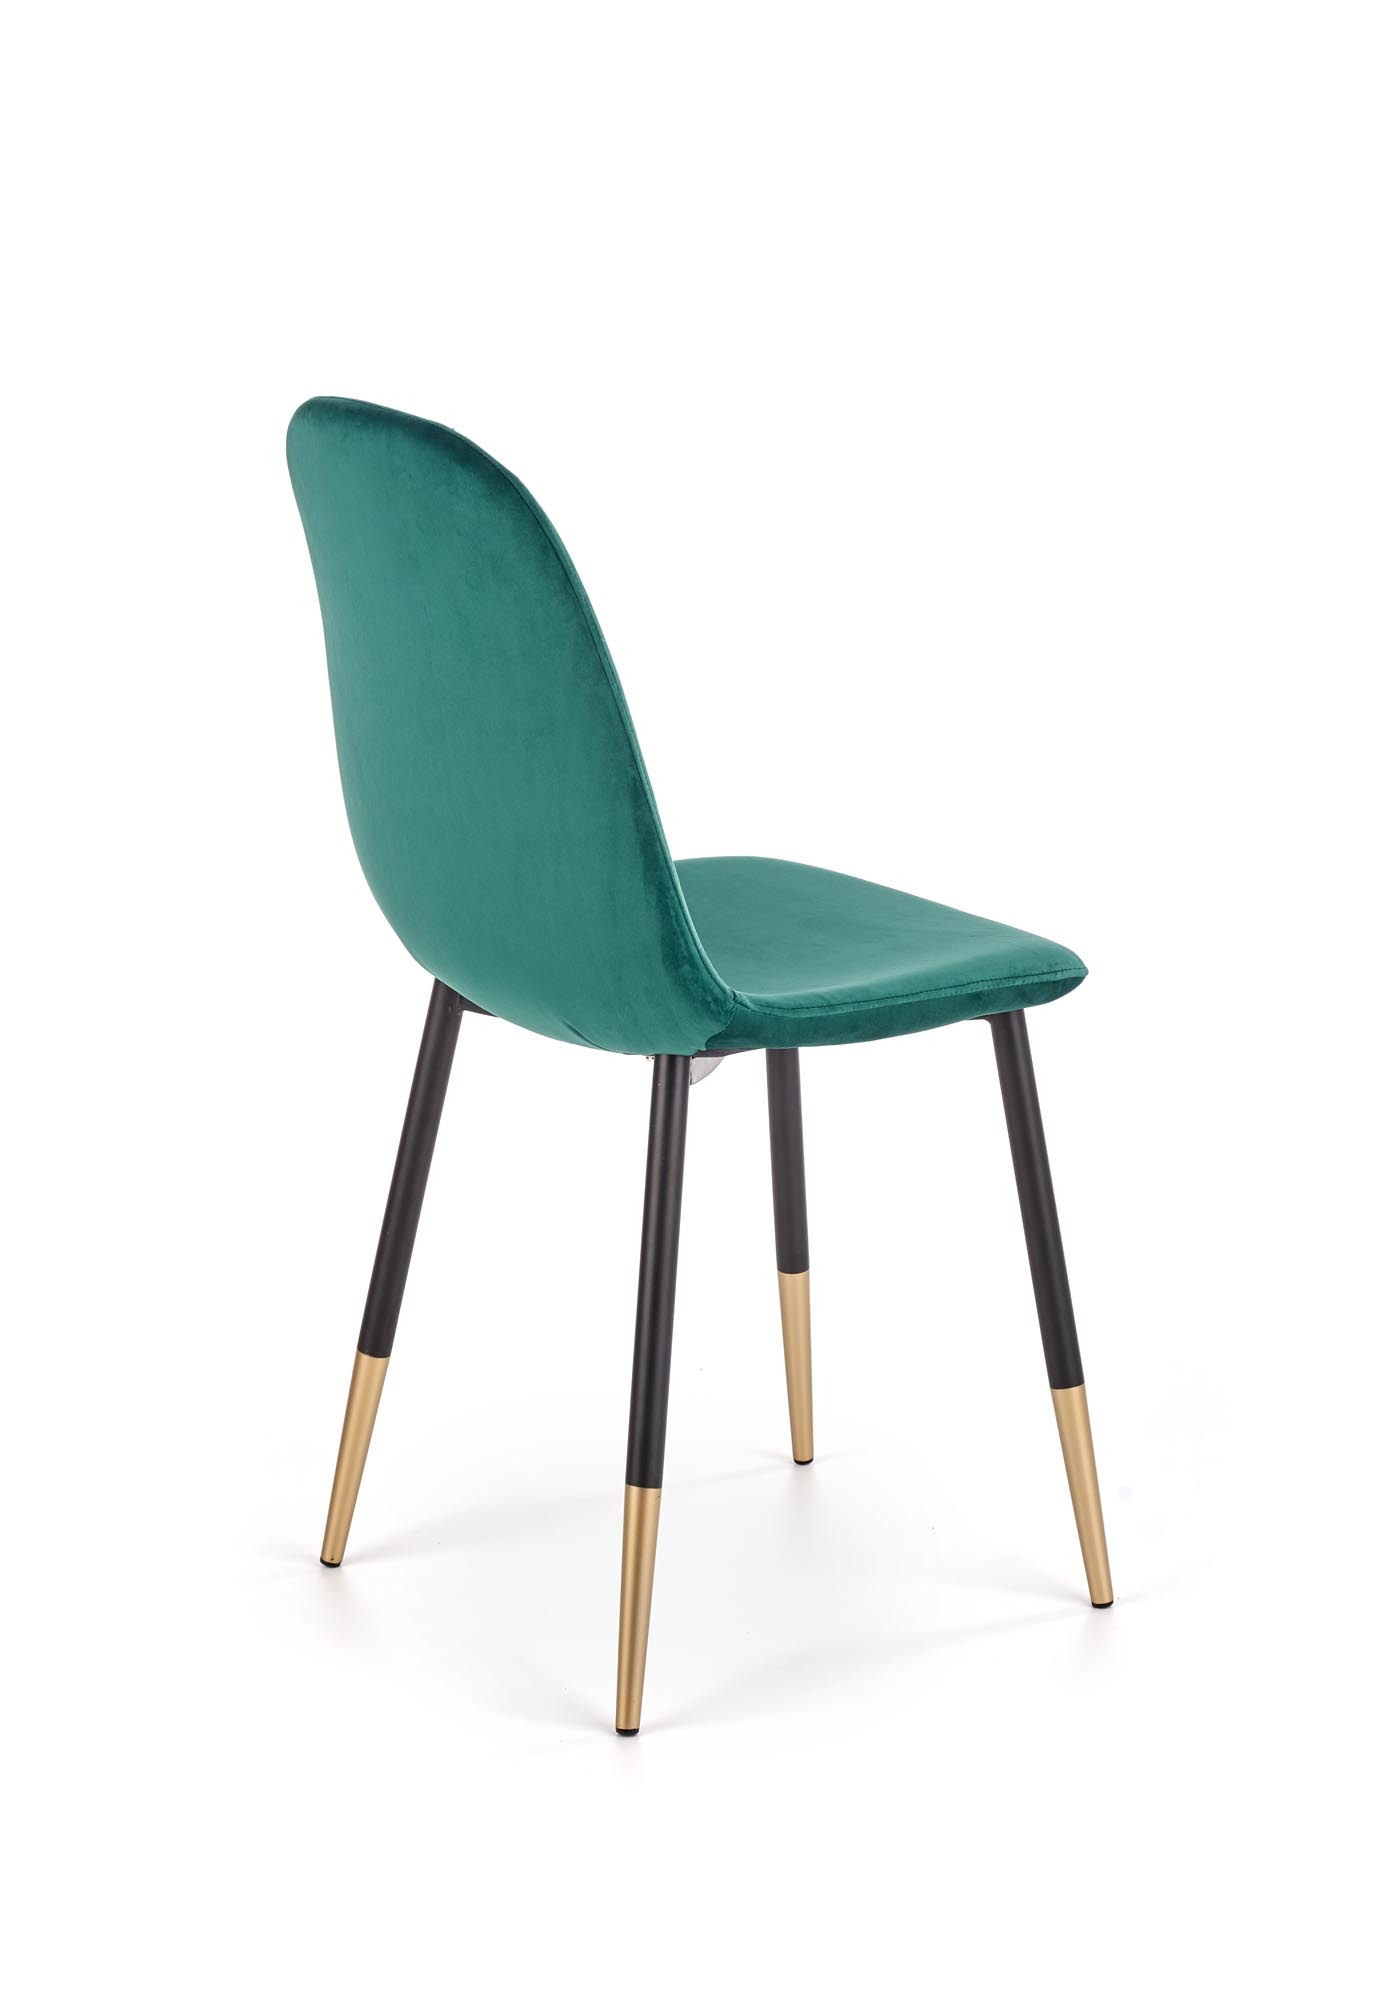 K379 krzesło ciemny zielony